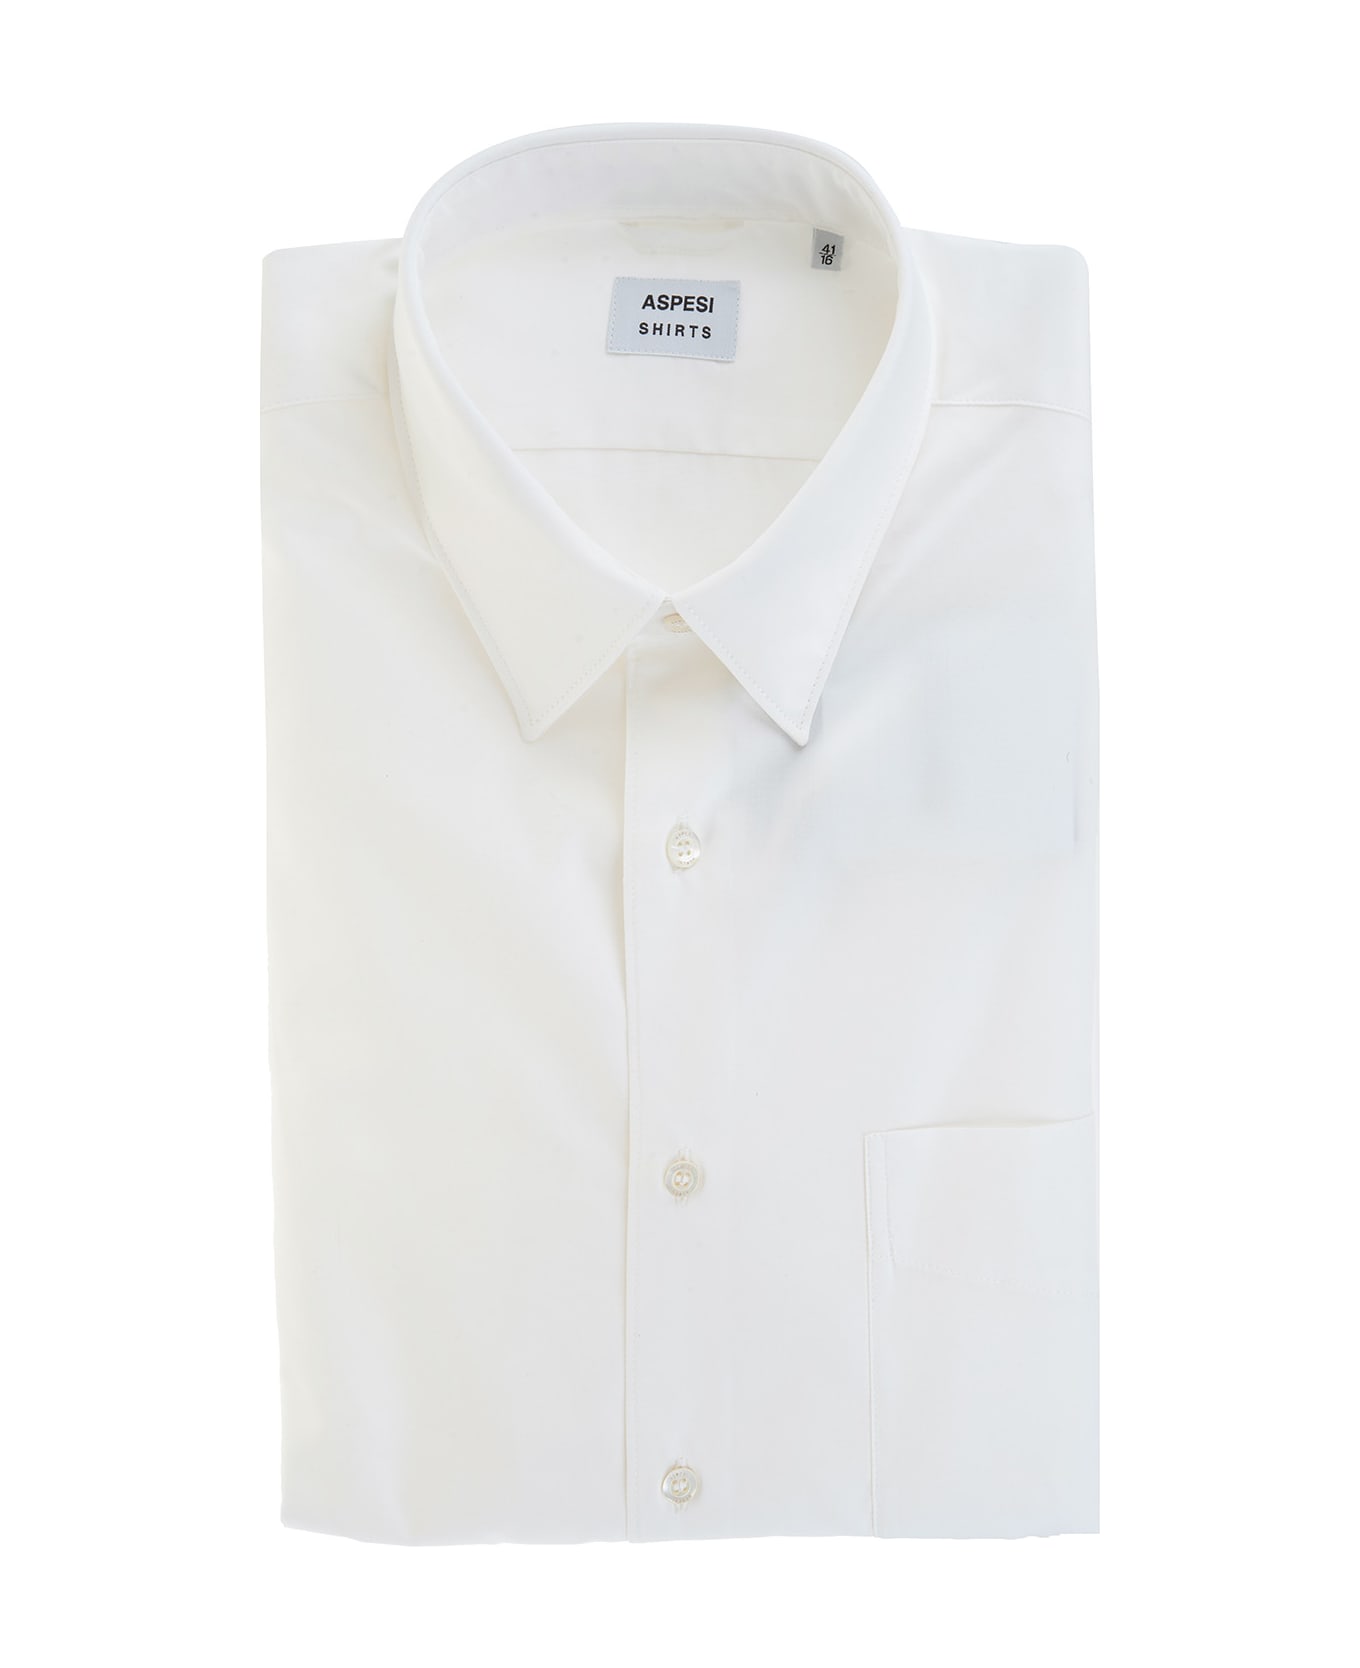 Aspesi Classic Shirt In White Cotton Poplin - White シャツ